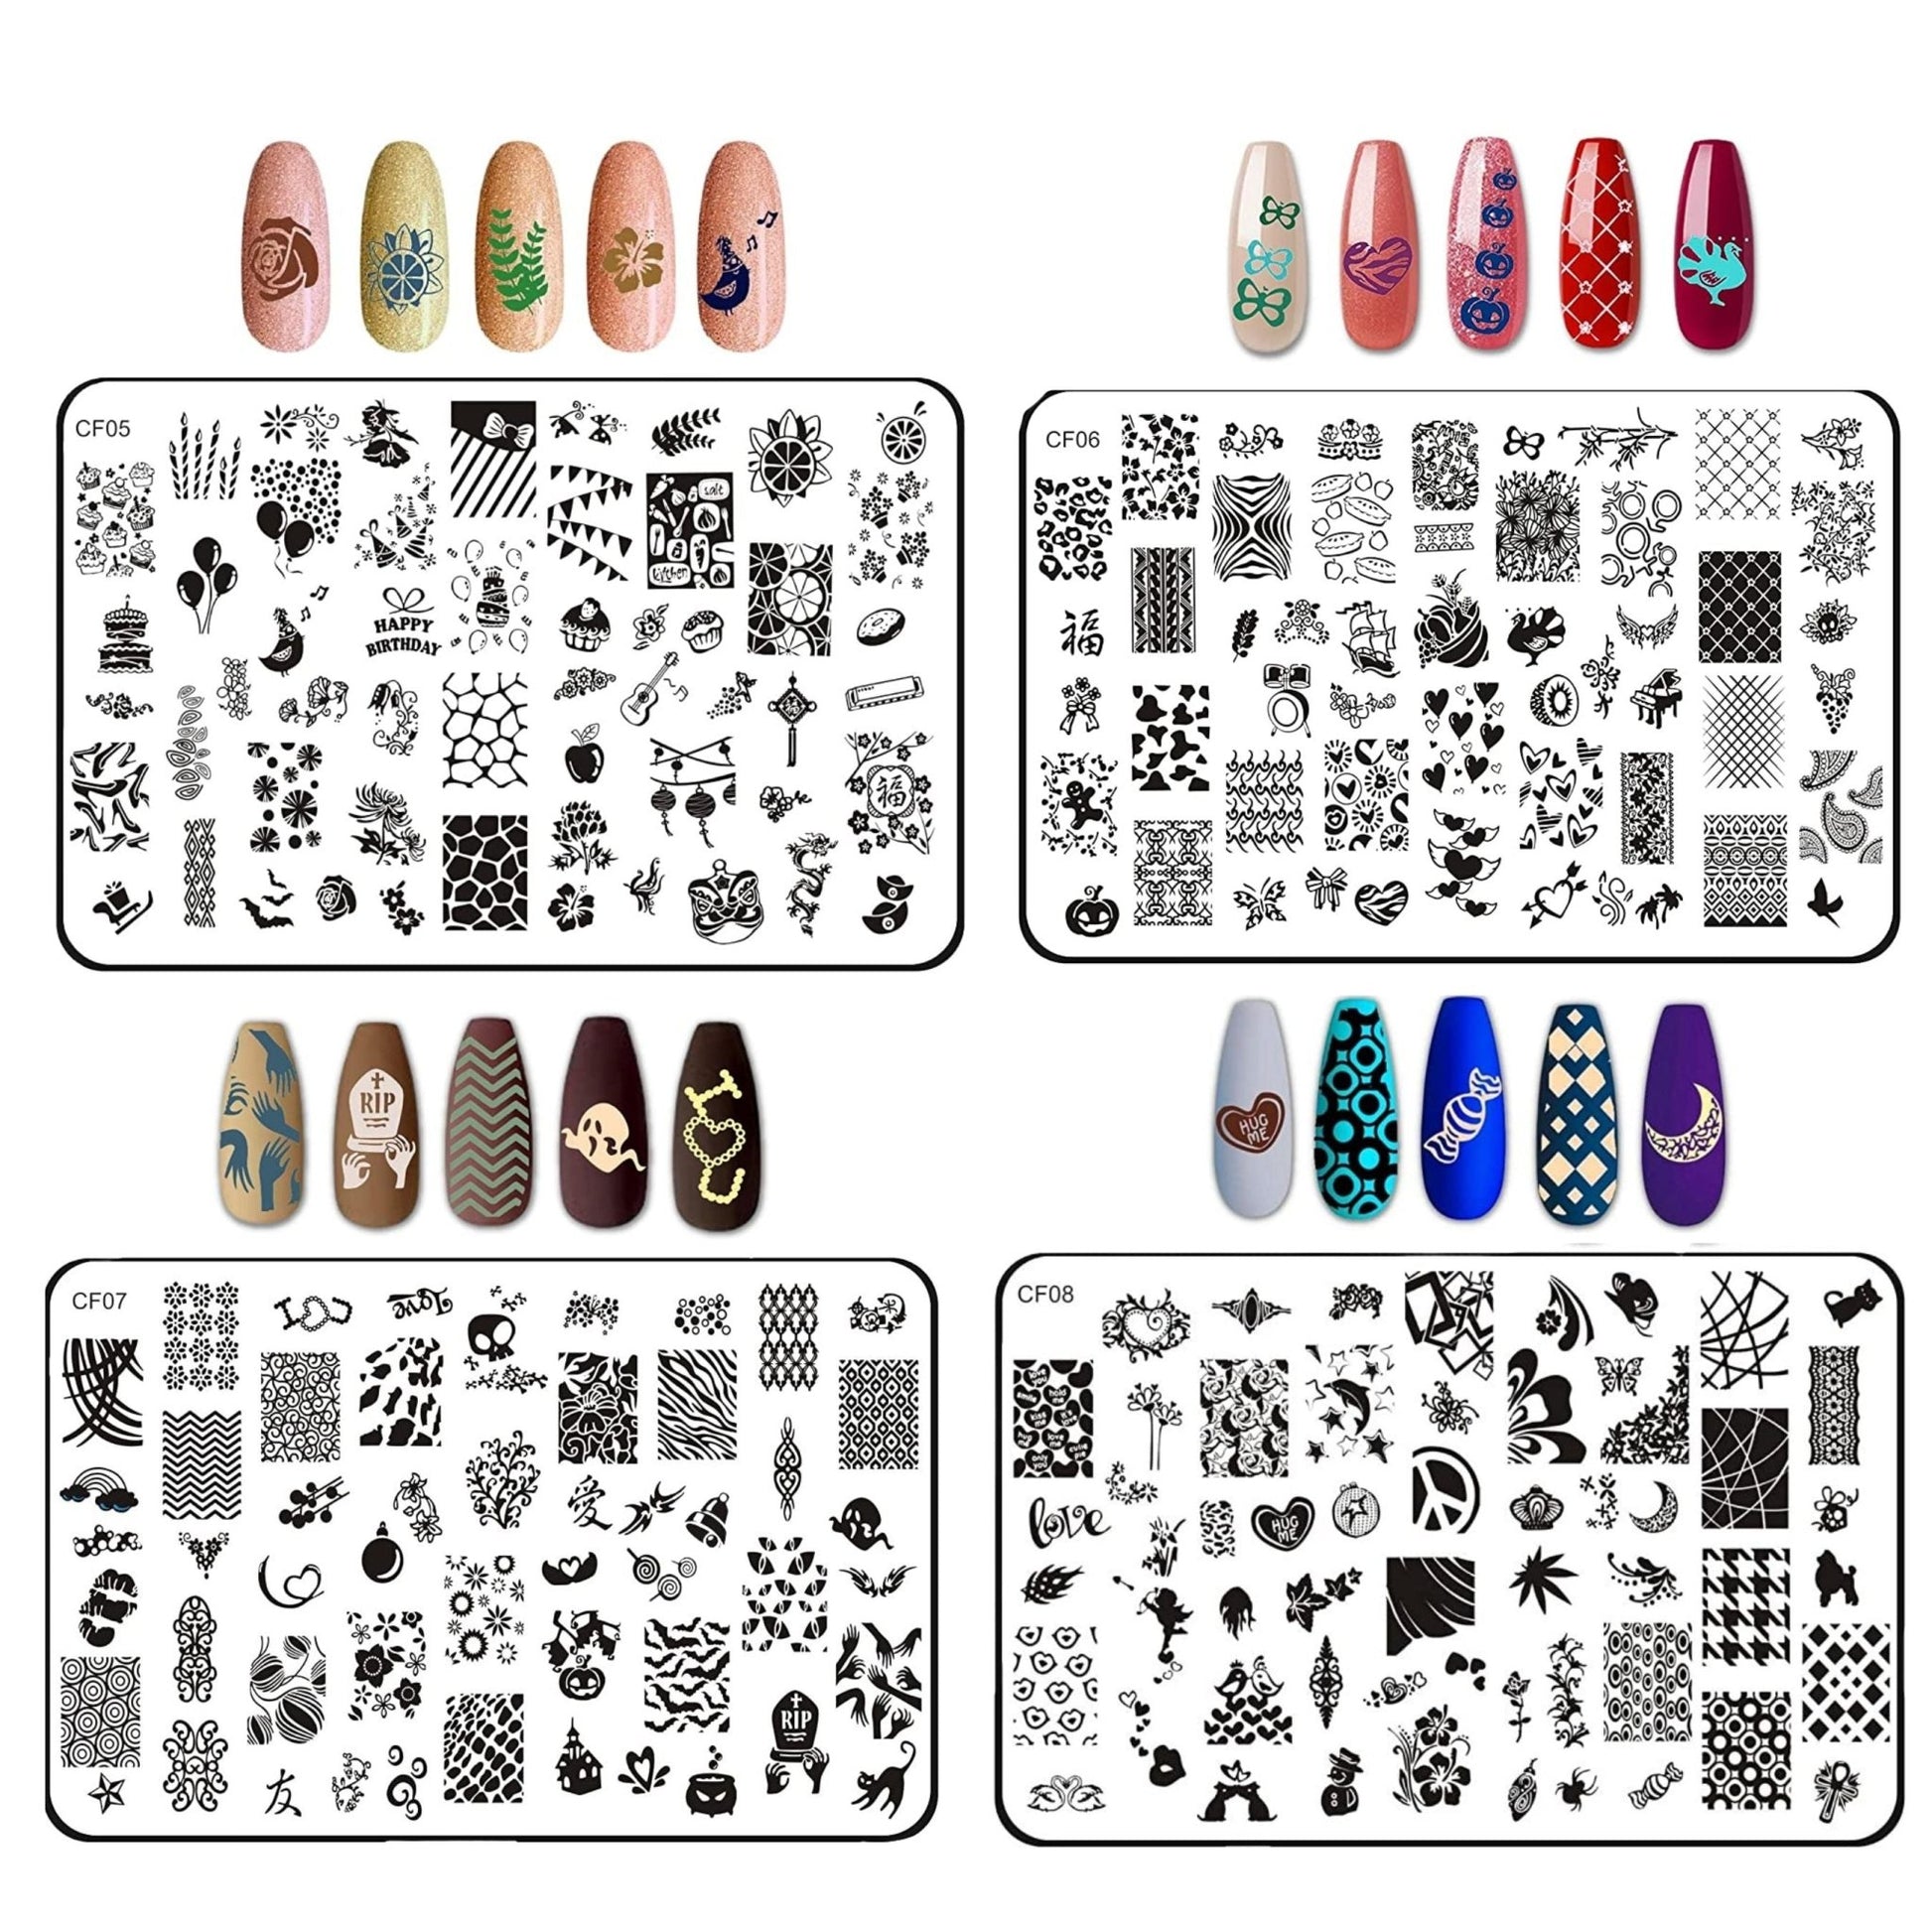 Nail Art Stamping Kit- CF Plates Nail Art Combo- Royalkart - The Urban Store